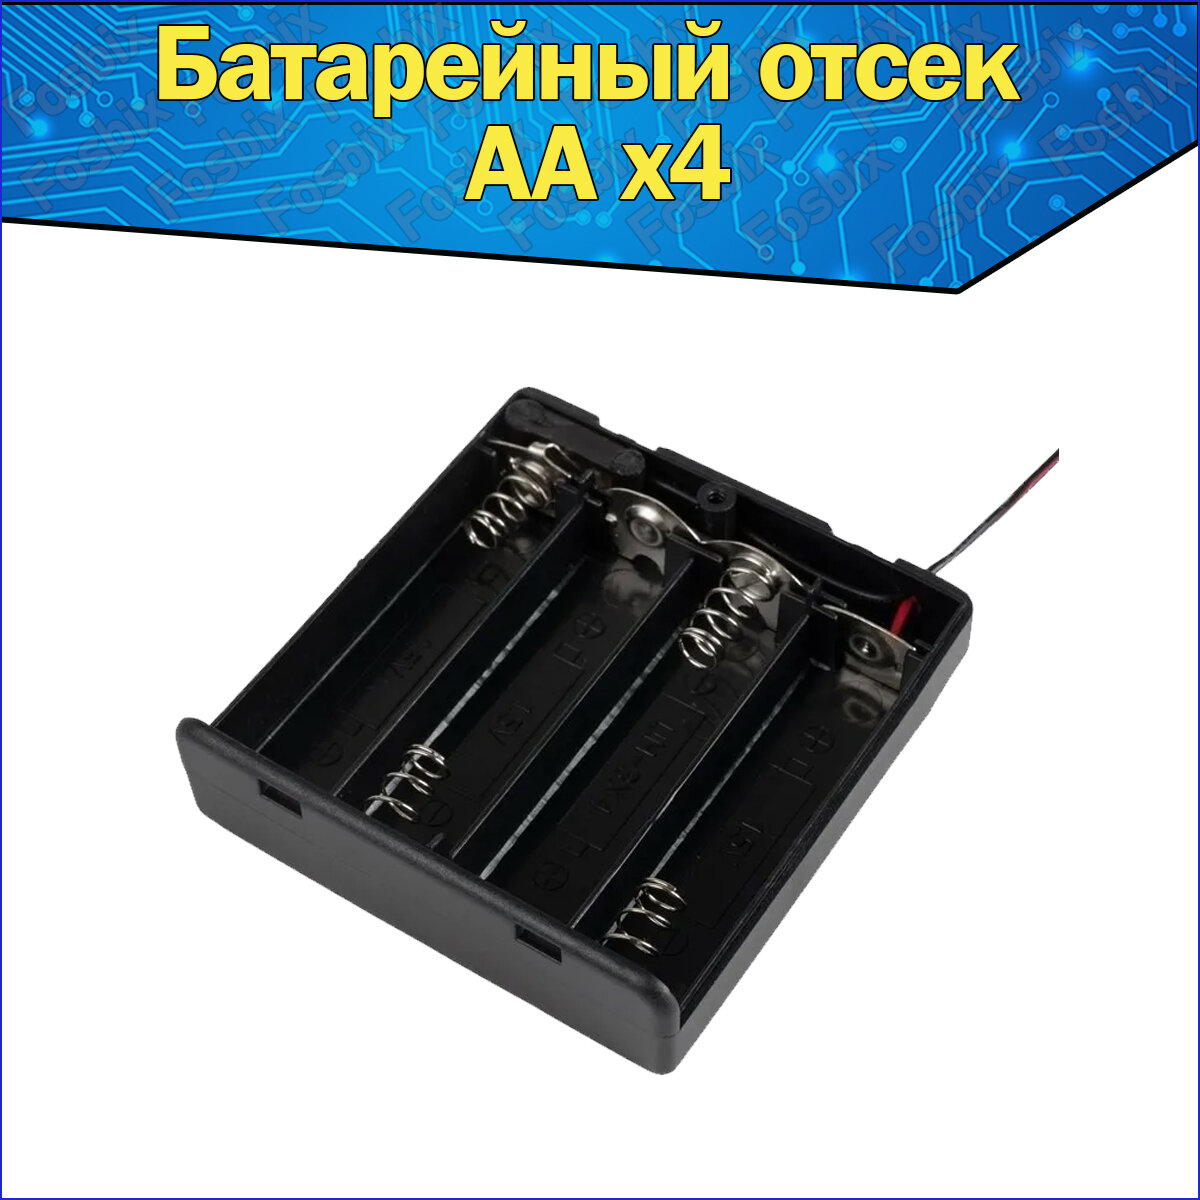 Батарейный отсек для аккумуляторов AA с проводами